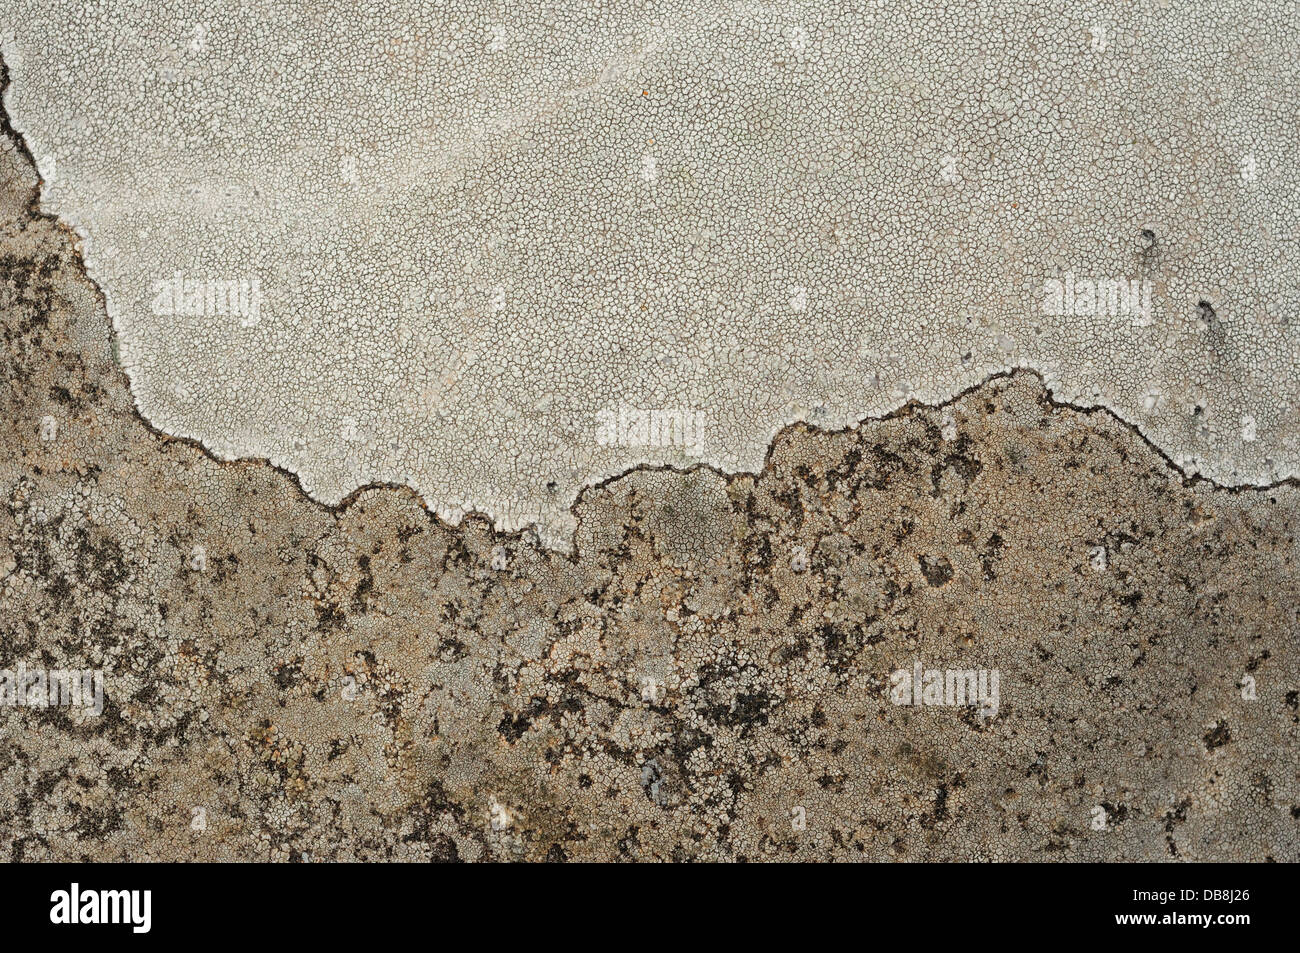 Lichen covering a granitic stone Stock Photo